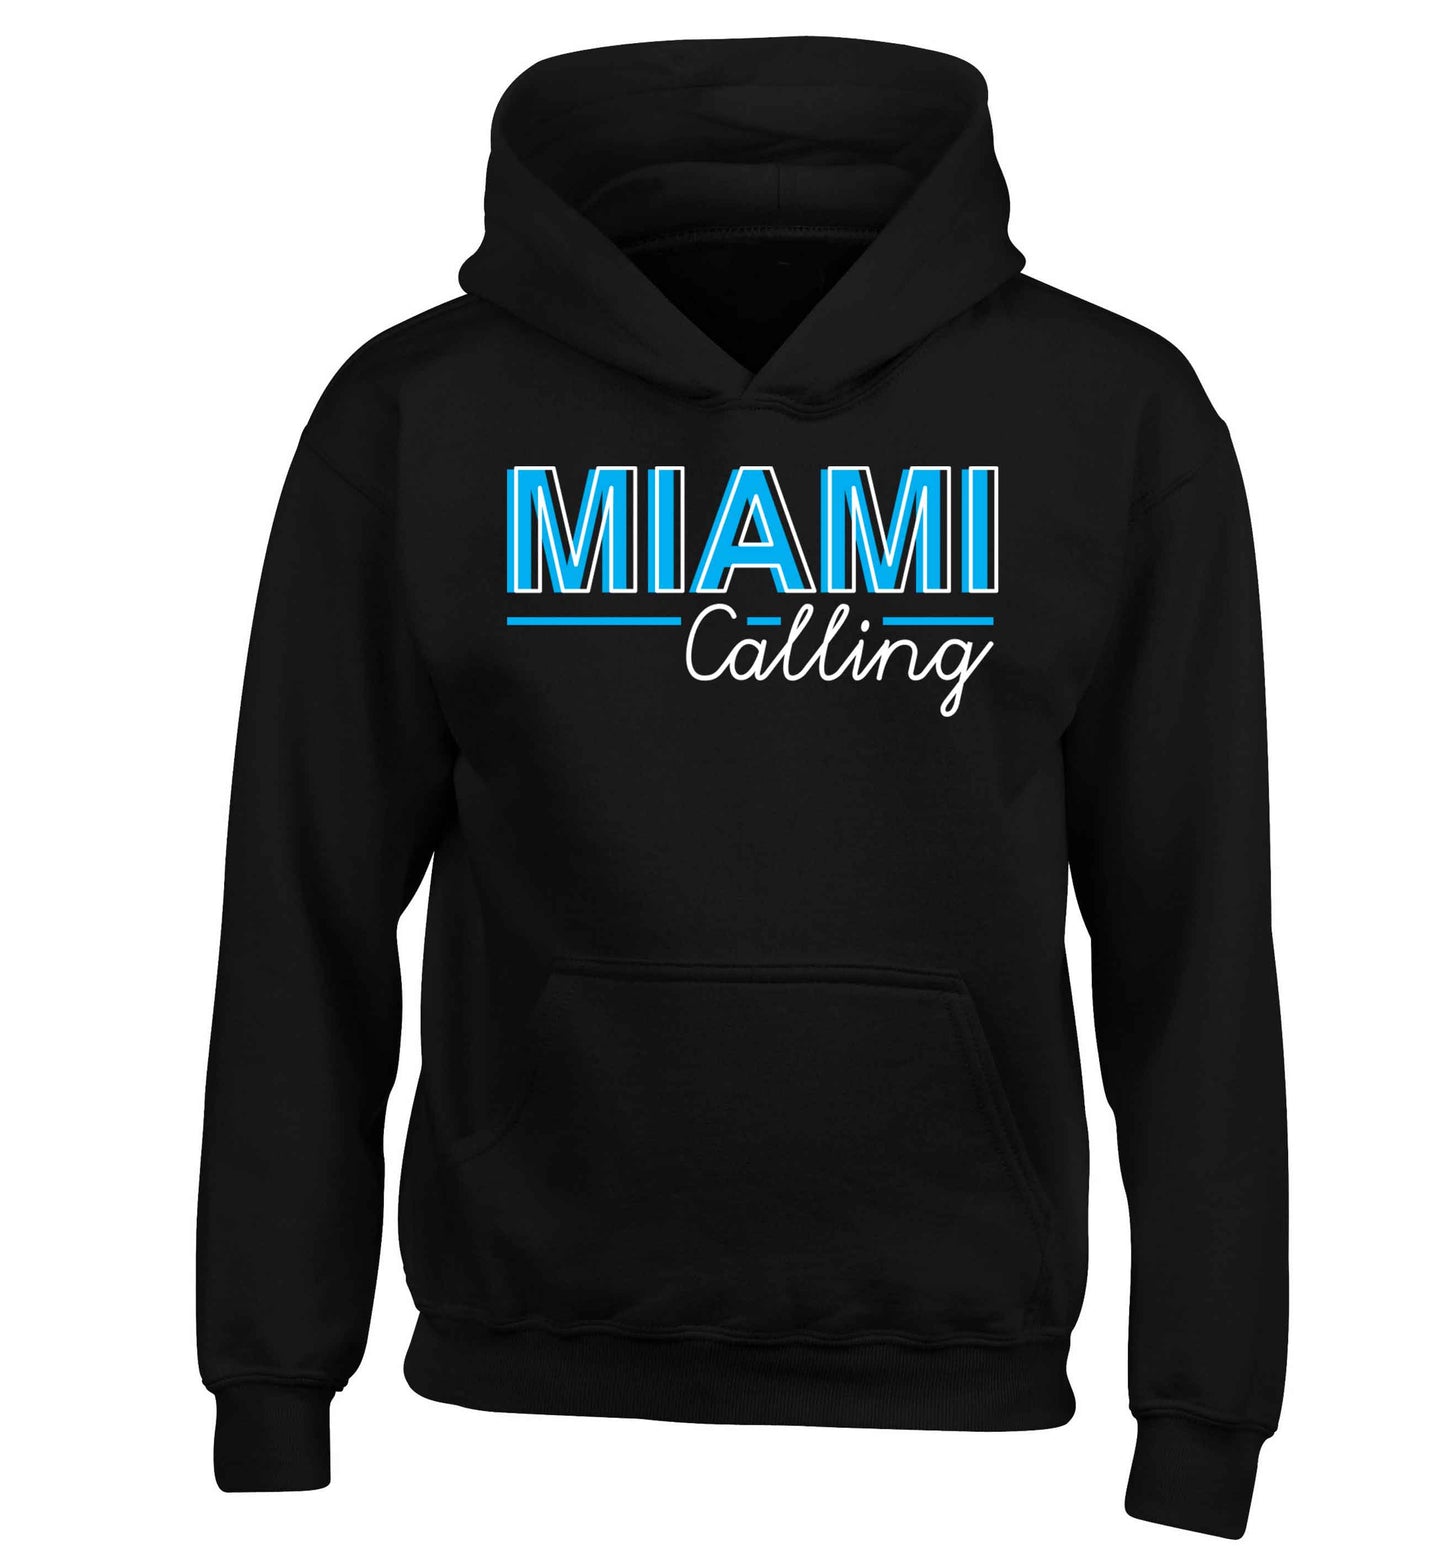 Miami calling children's black hoodie 12-13 Years